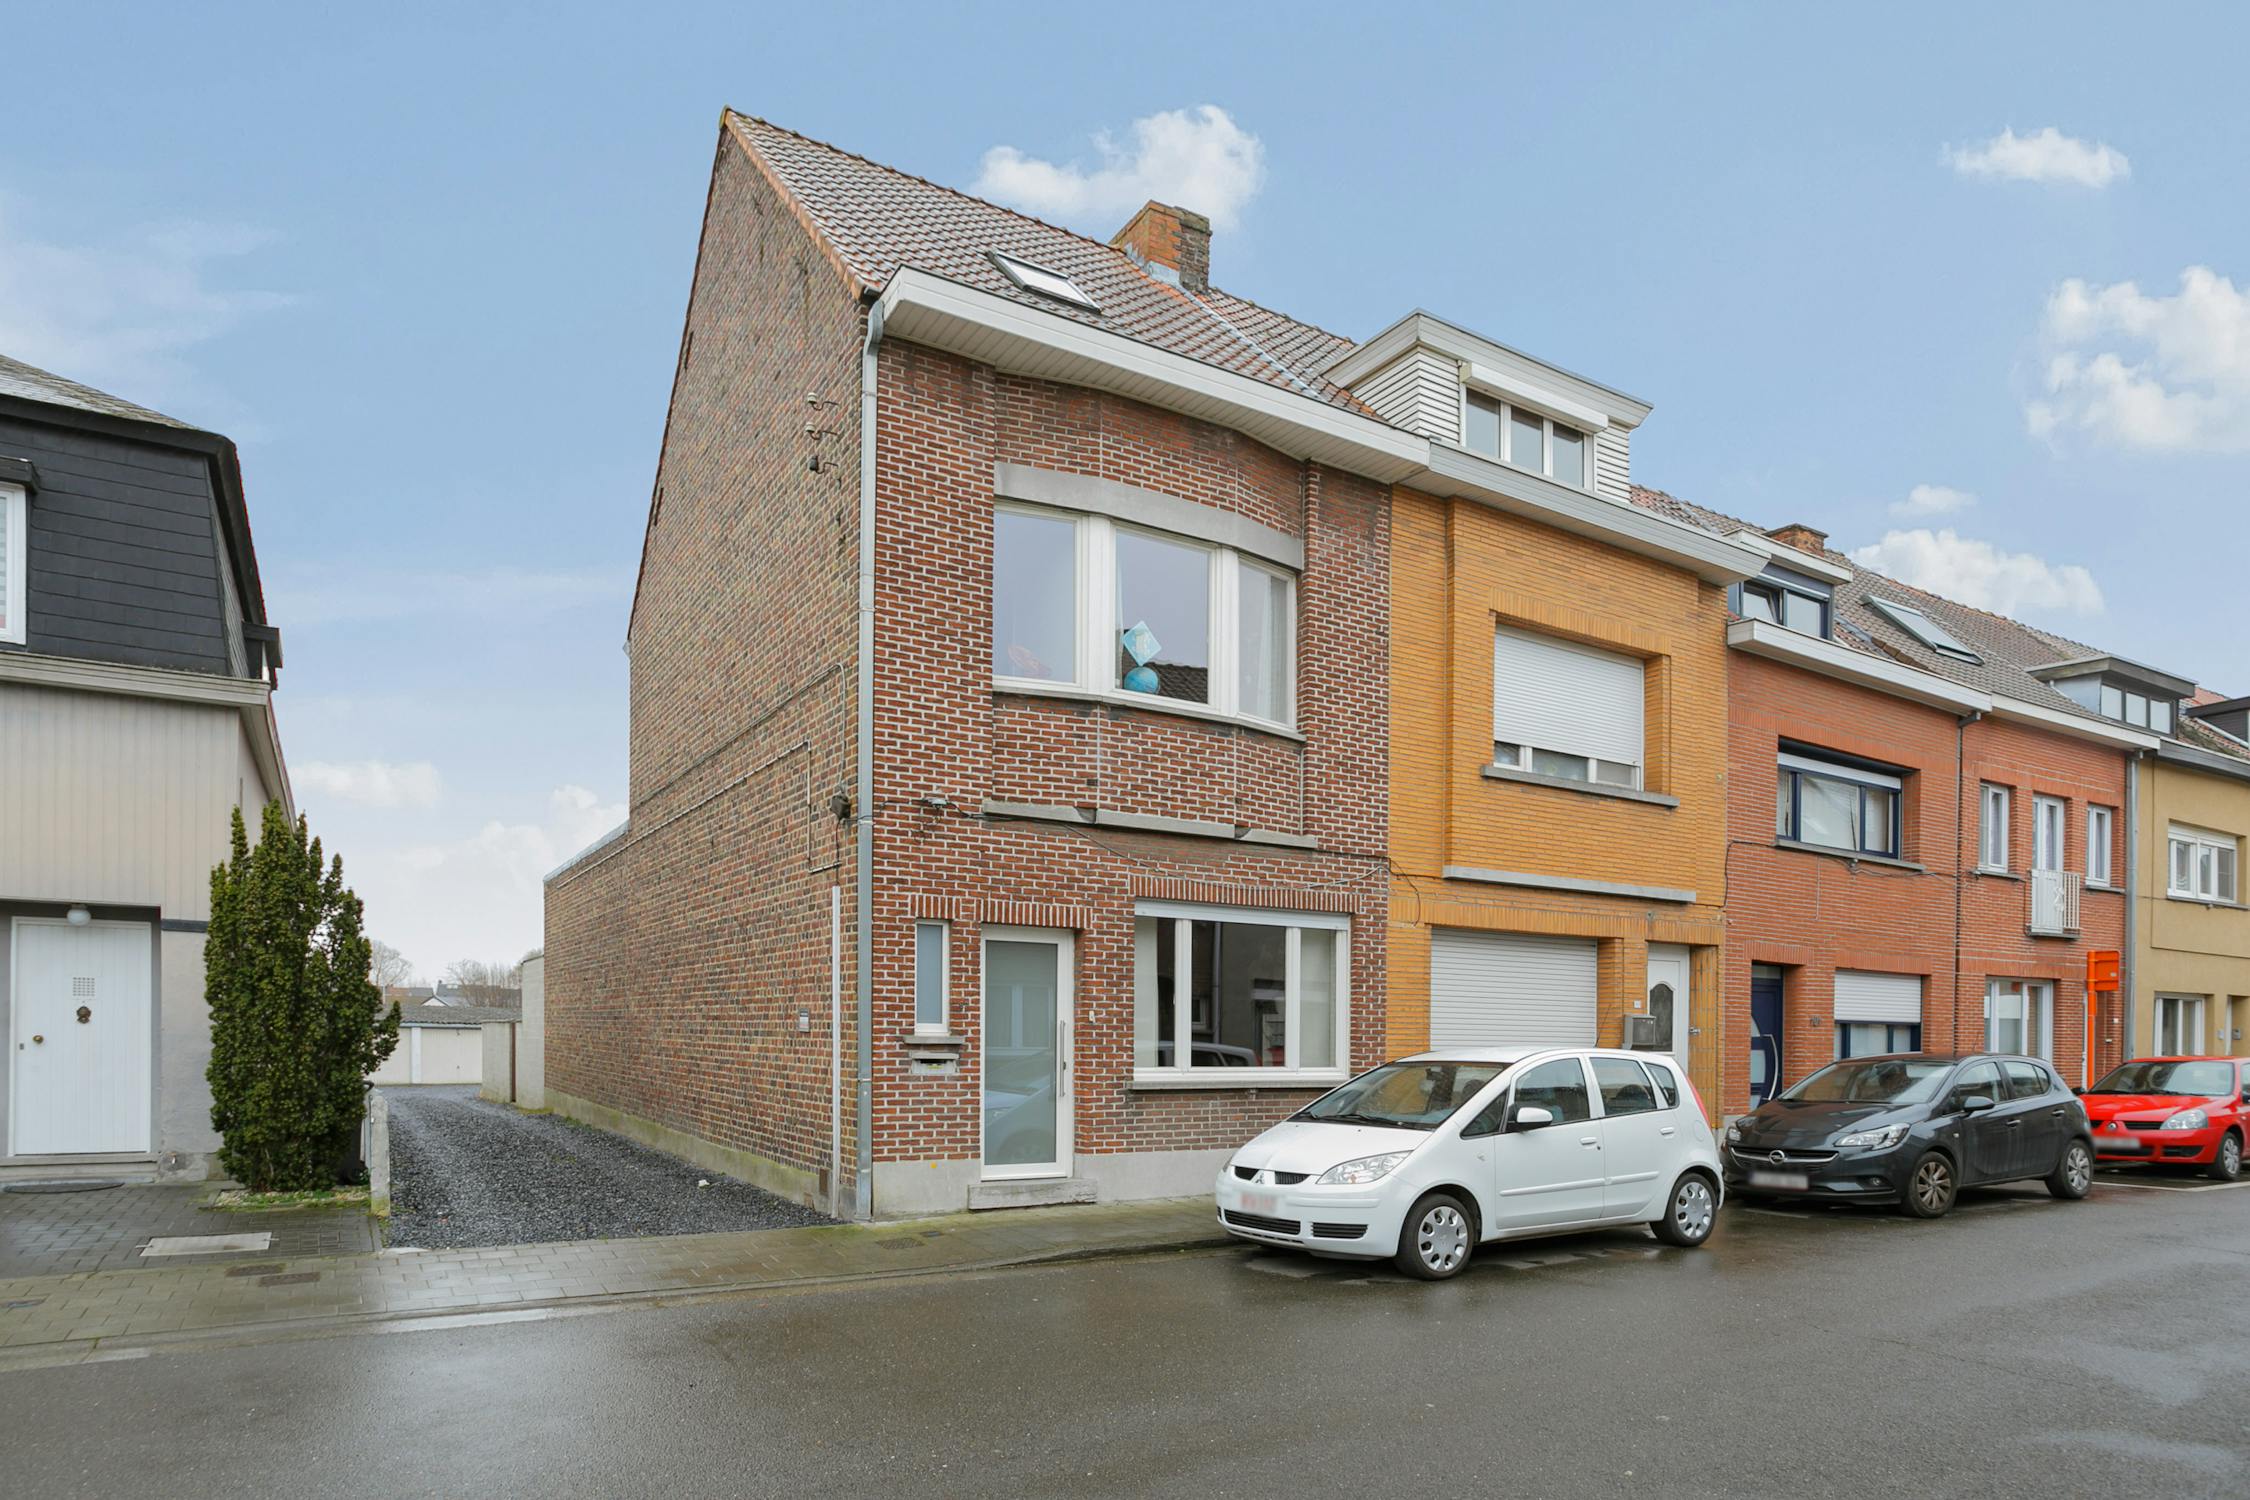 Adverteerder Armstrong binnenvallen Huis verkocht in Vogelhoekstraat 97, Gentbrugge - Dewaele